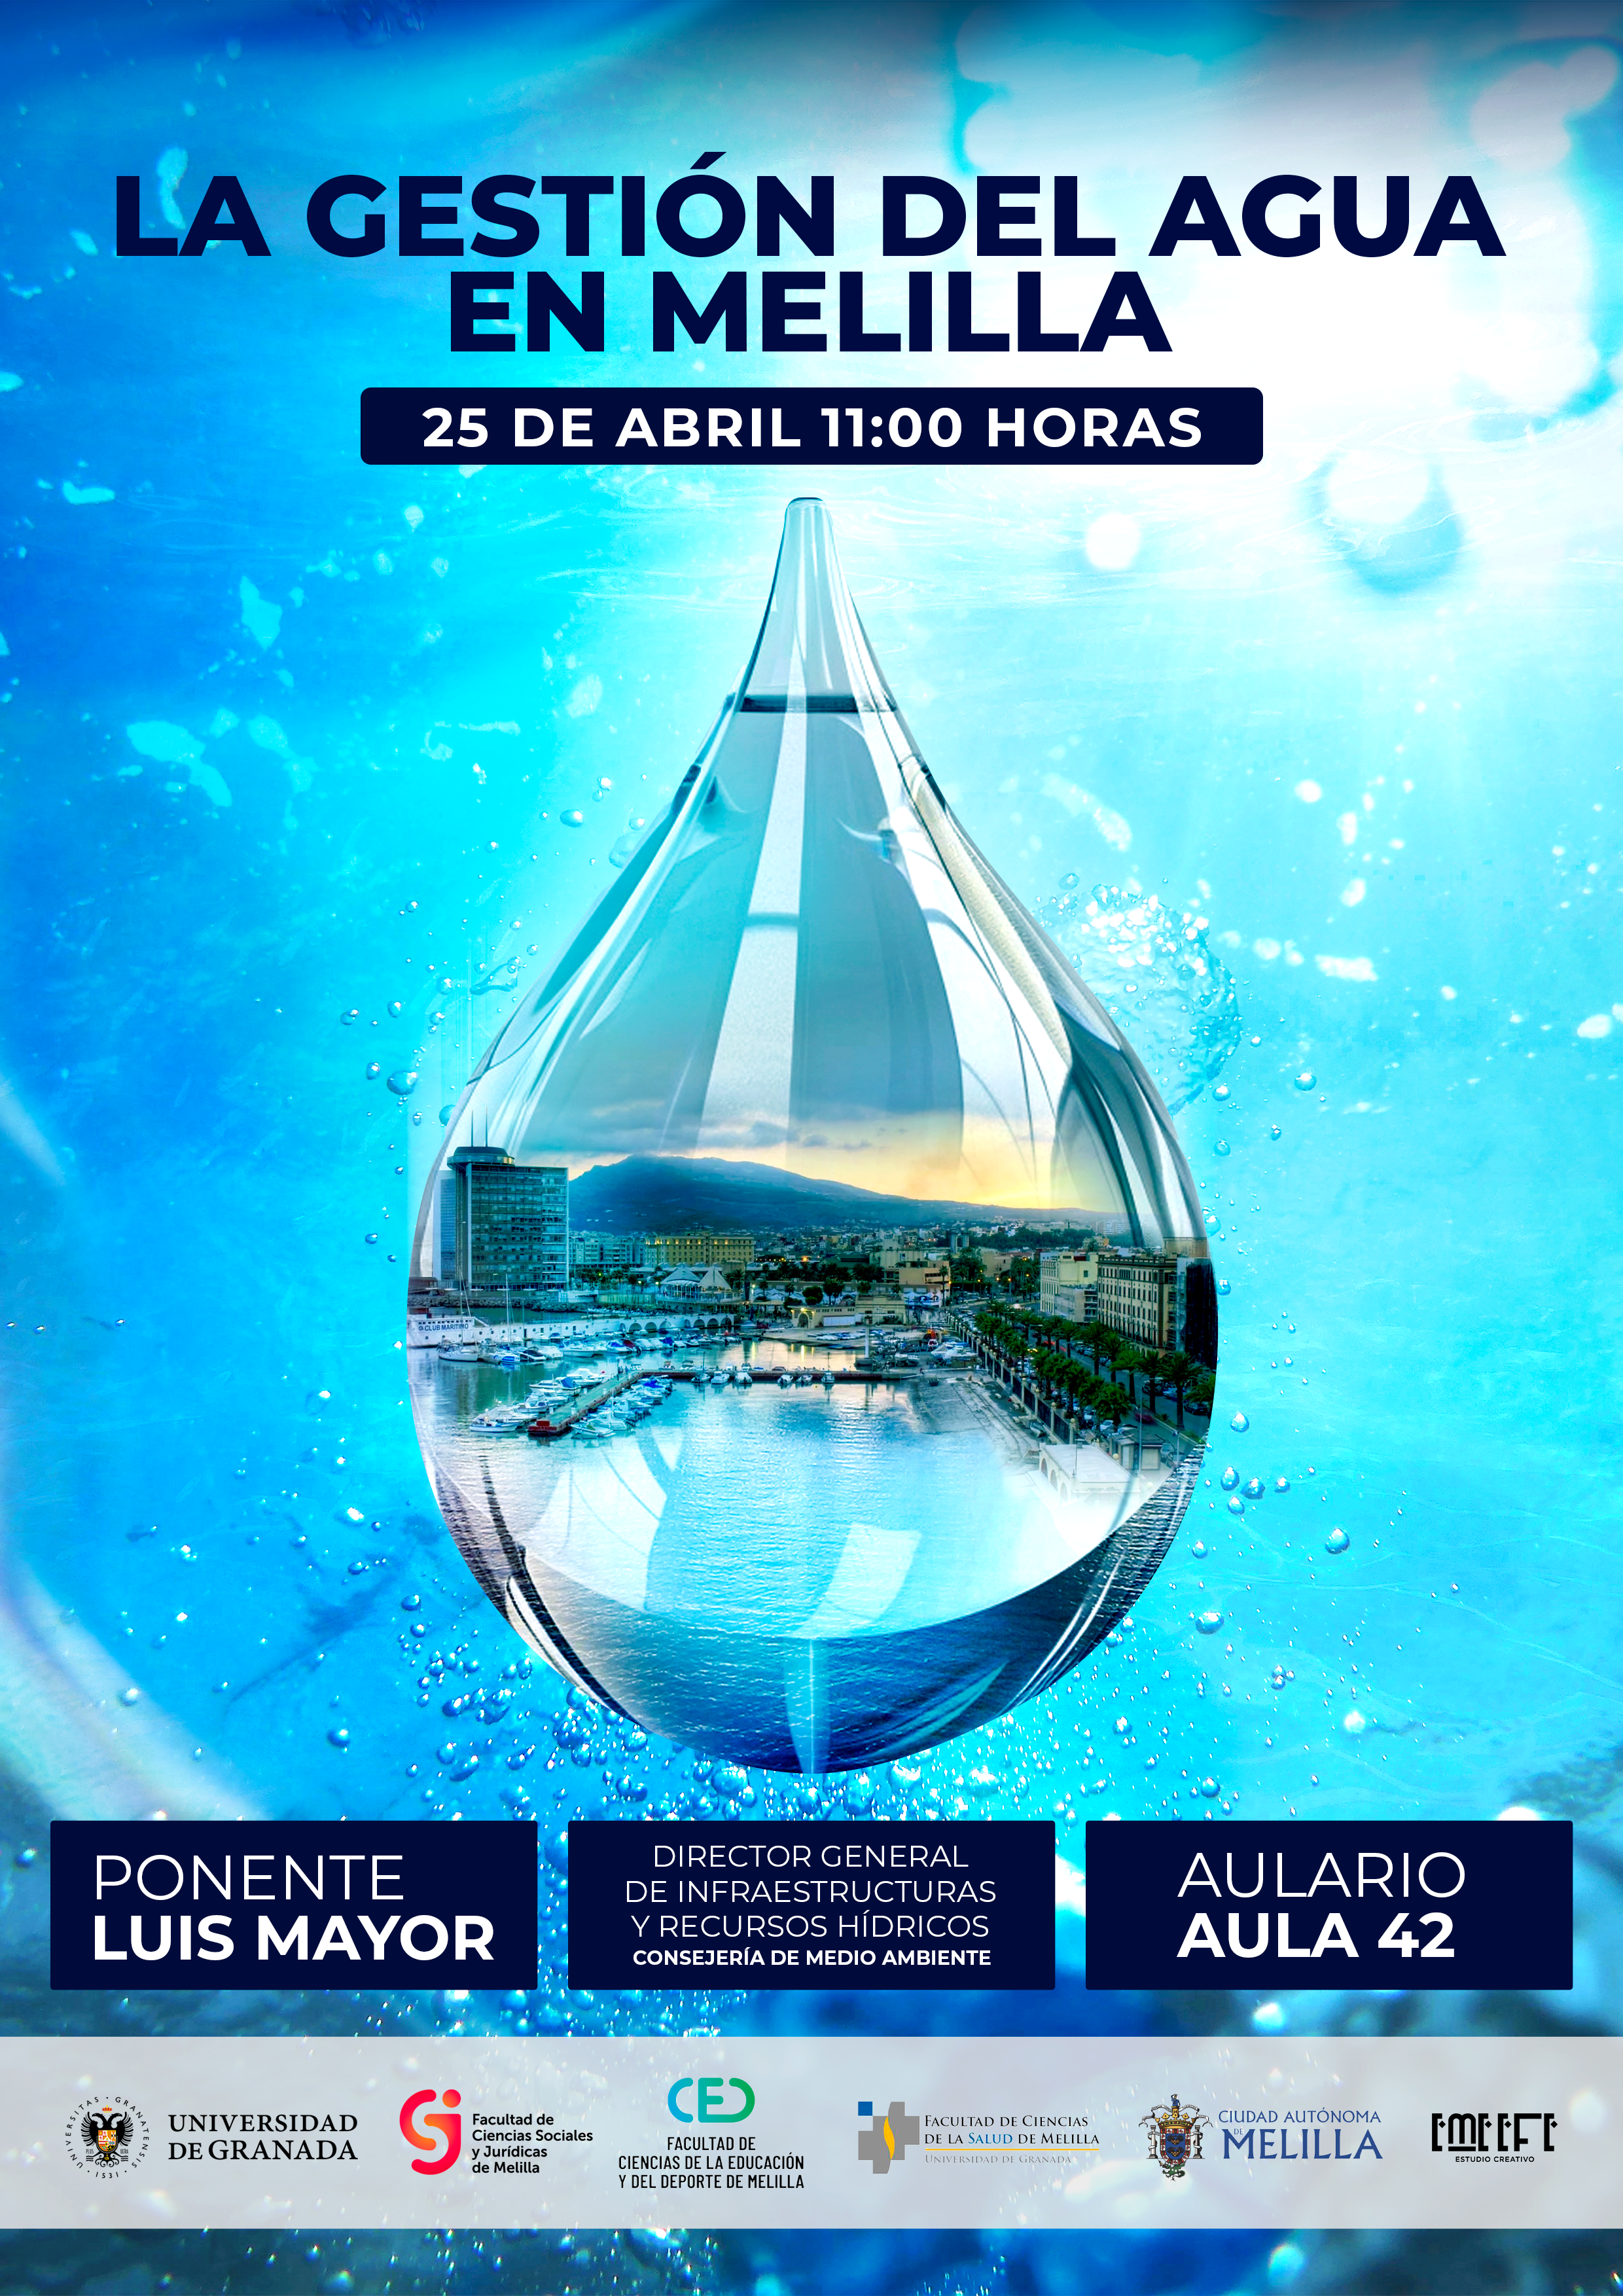 Ponencia 'La gestión del agua en Melilla' con el director general de Recursos Hídricos de la ciudad